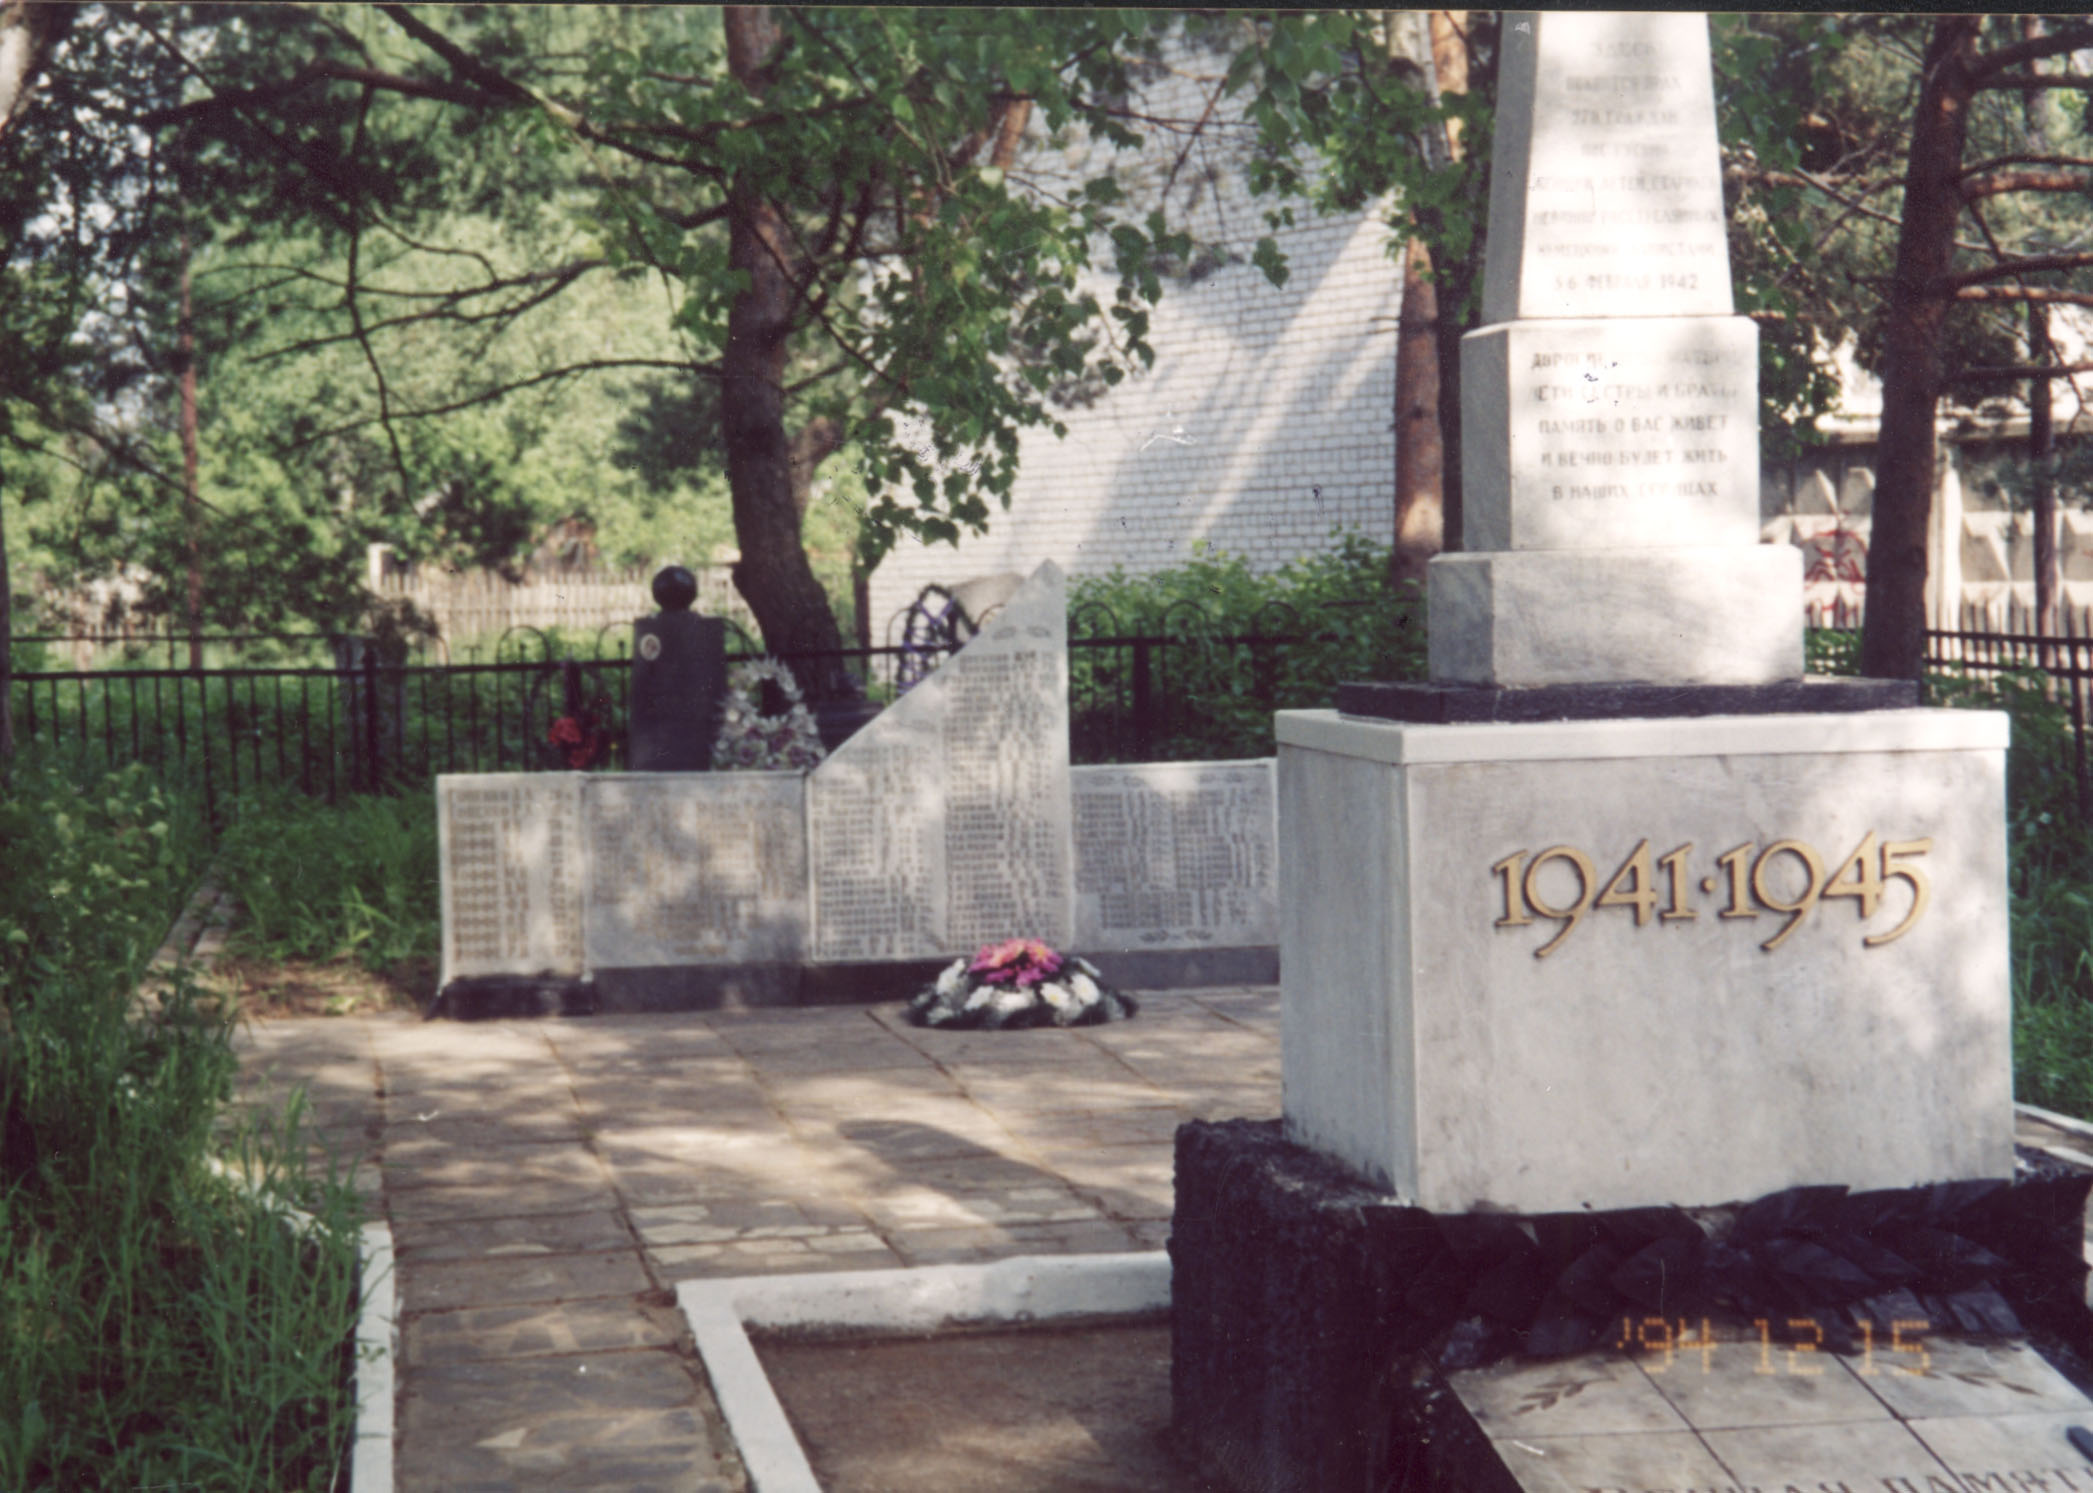 The Jewish Cemetery, Gusino